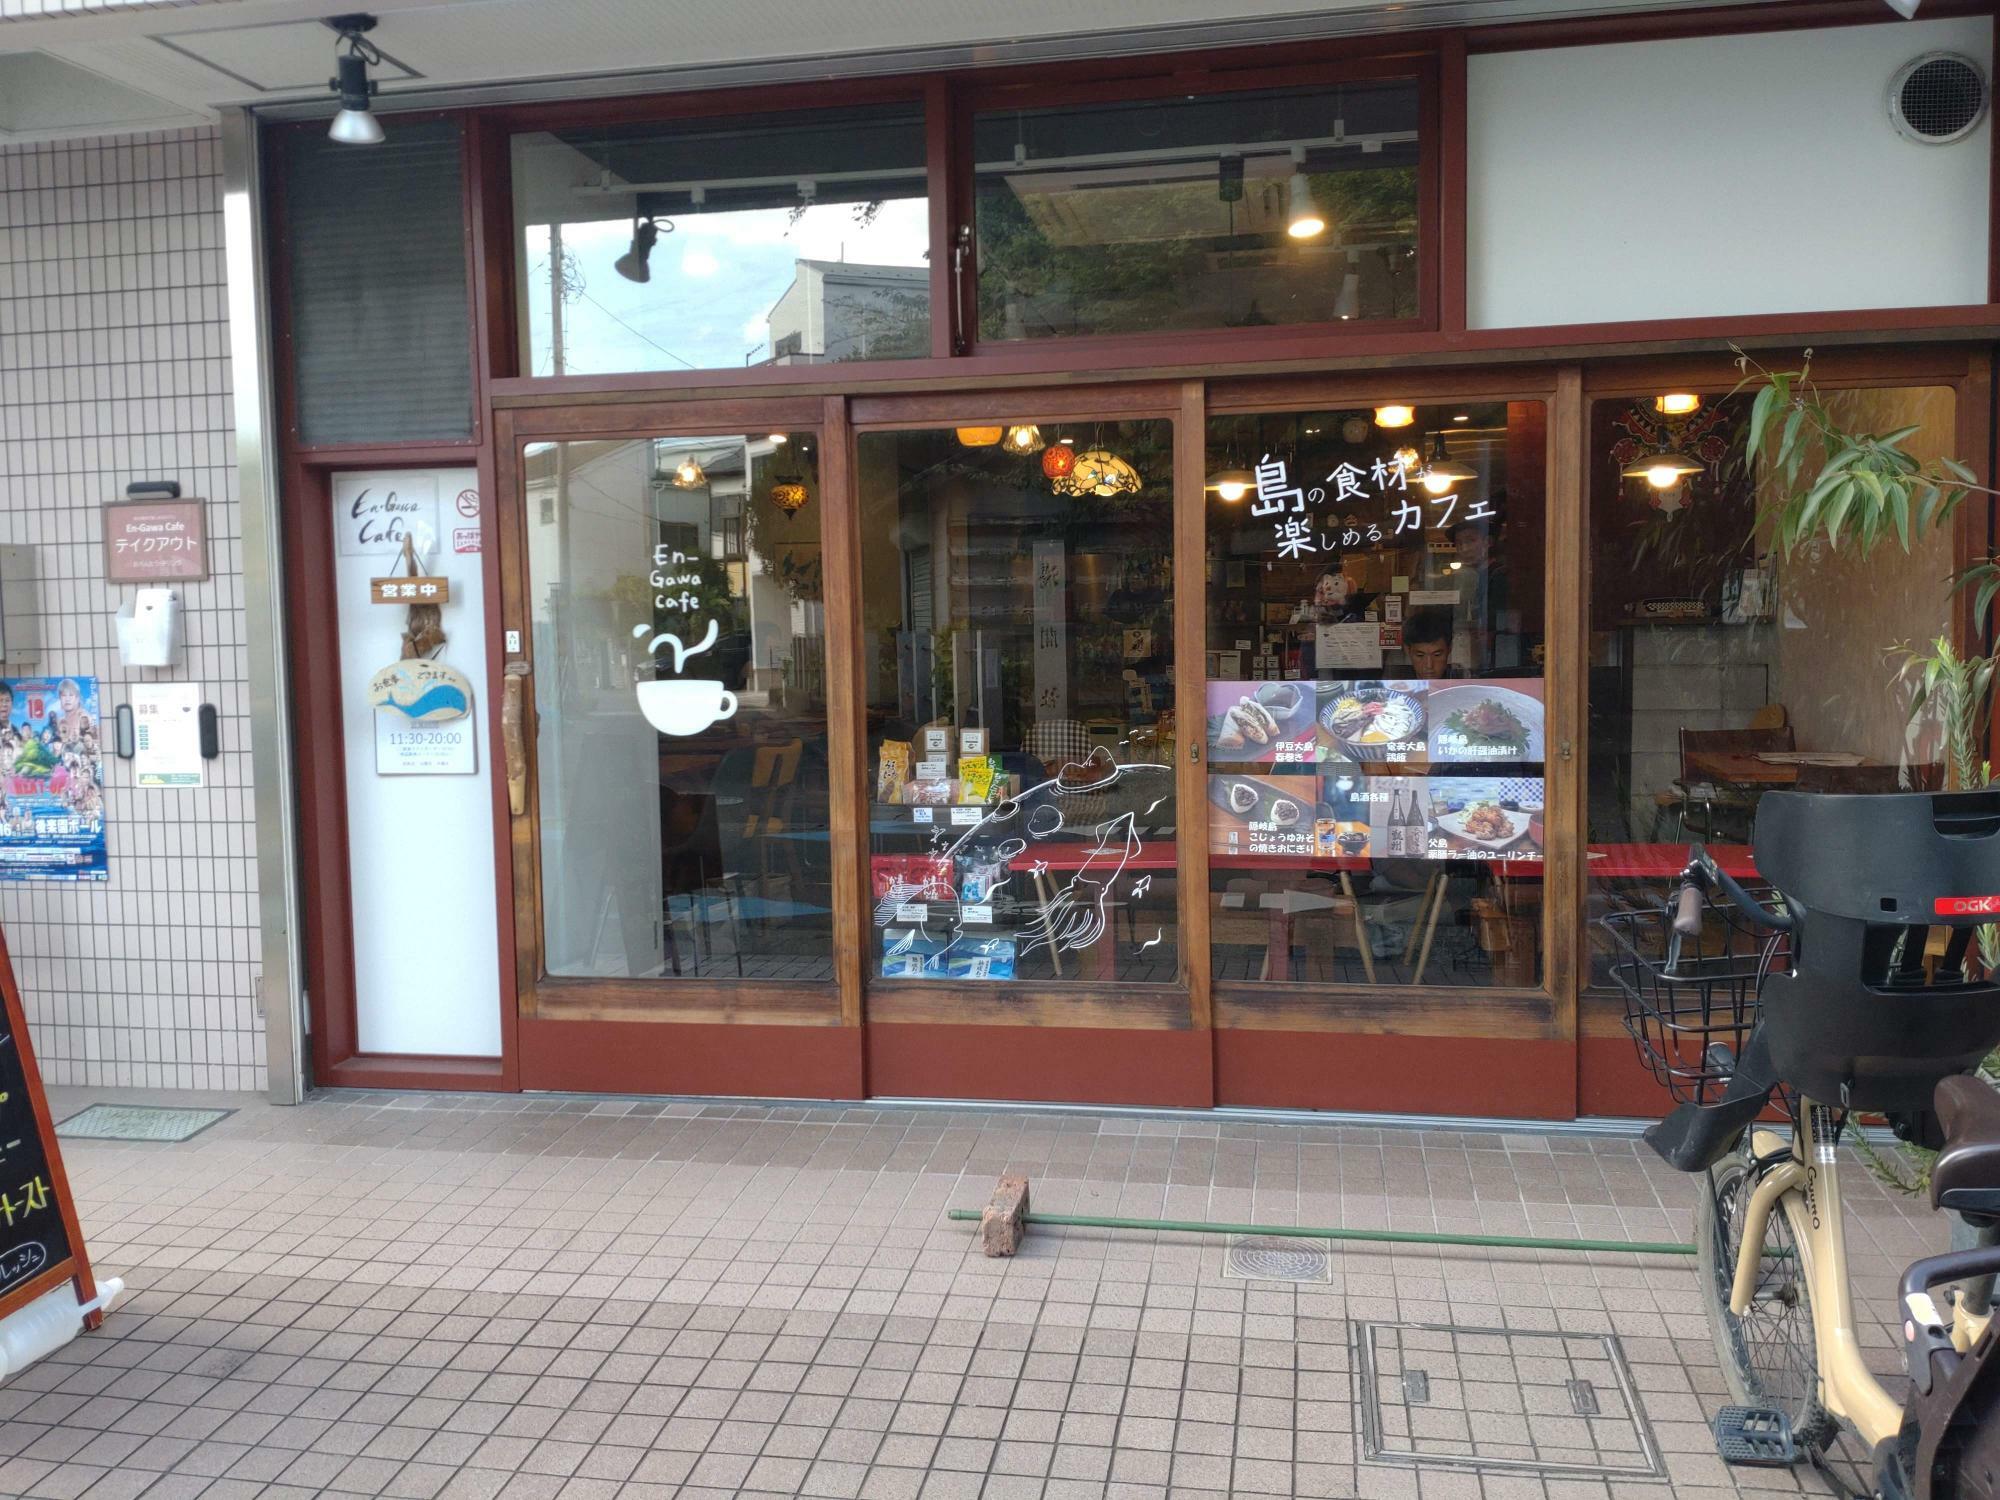 En-Gawa Cafe外観